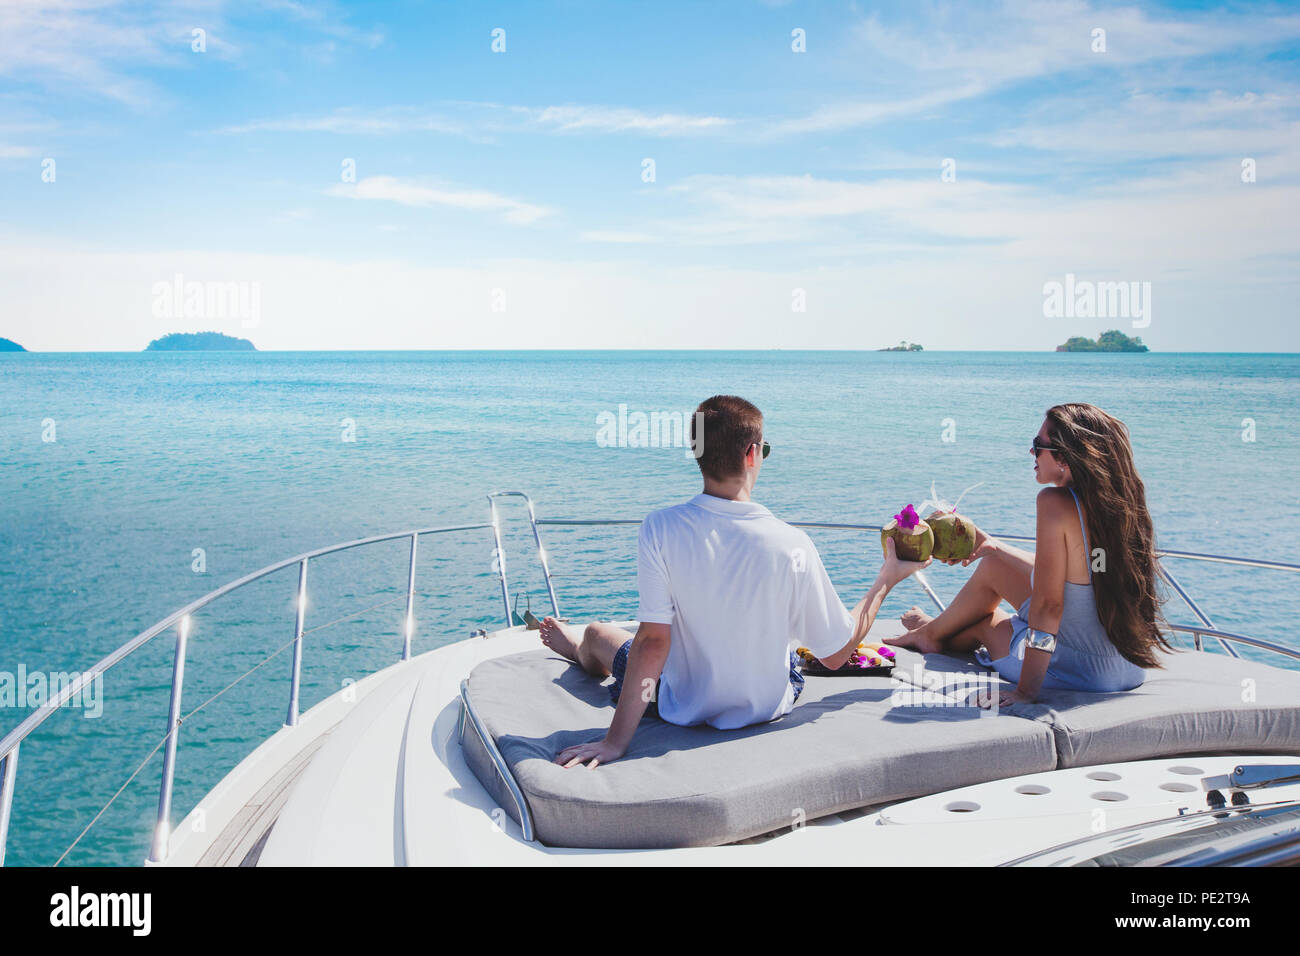 Le bateau yacht de miel, lifrestyle luxueux et romantique, Voyage Vacances pour couple Banque D'Images